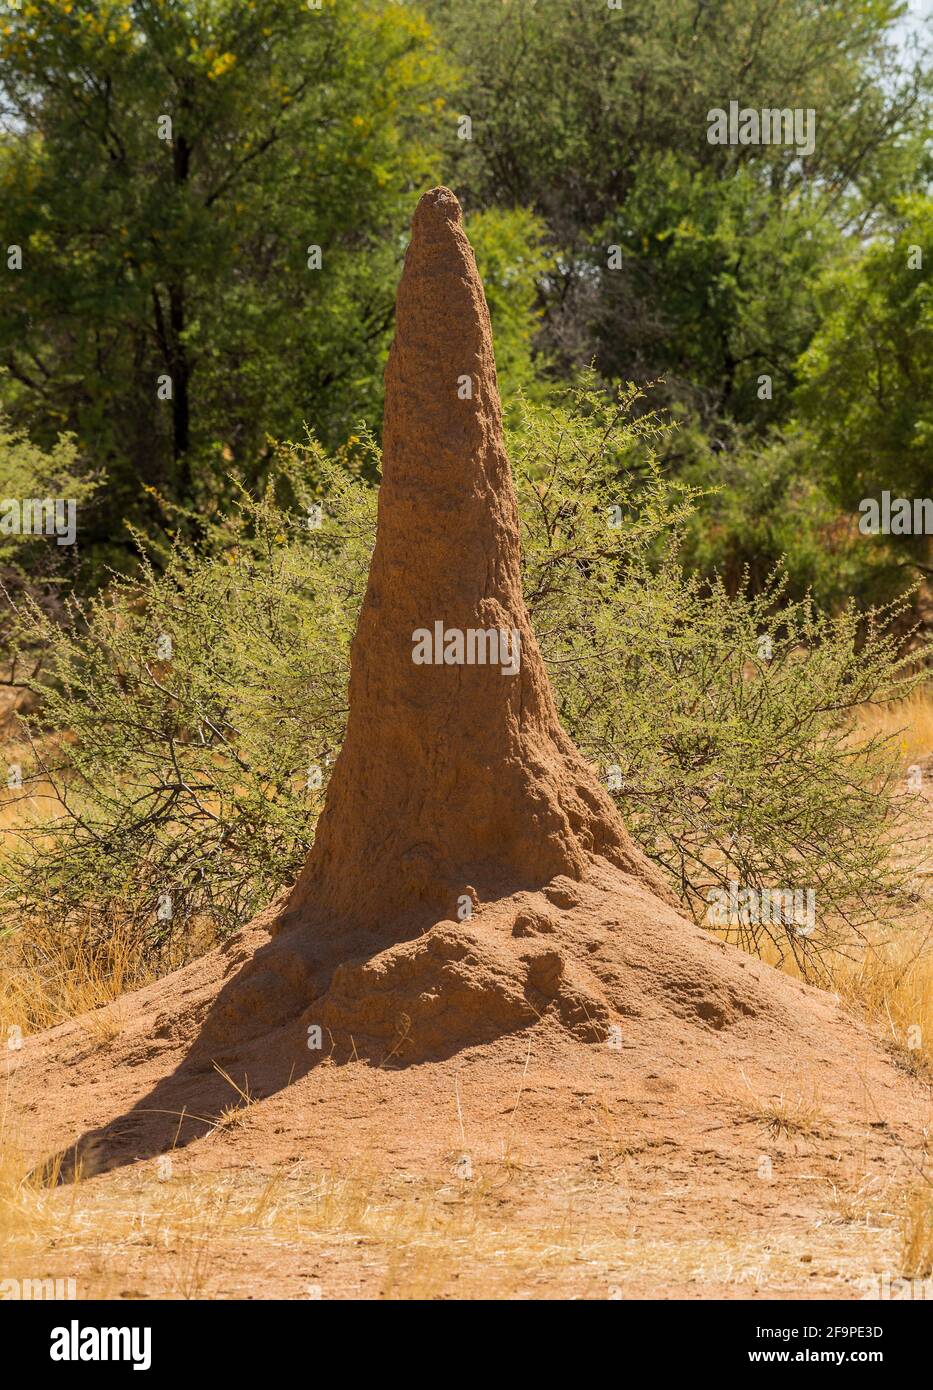 Bush paysage avec un grand termite, Namibie Banque D'Images